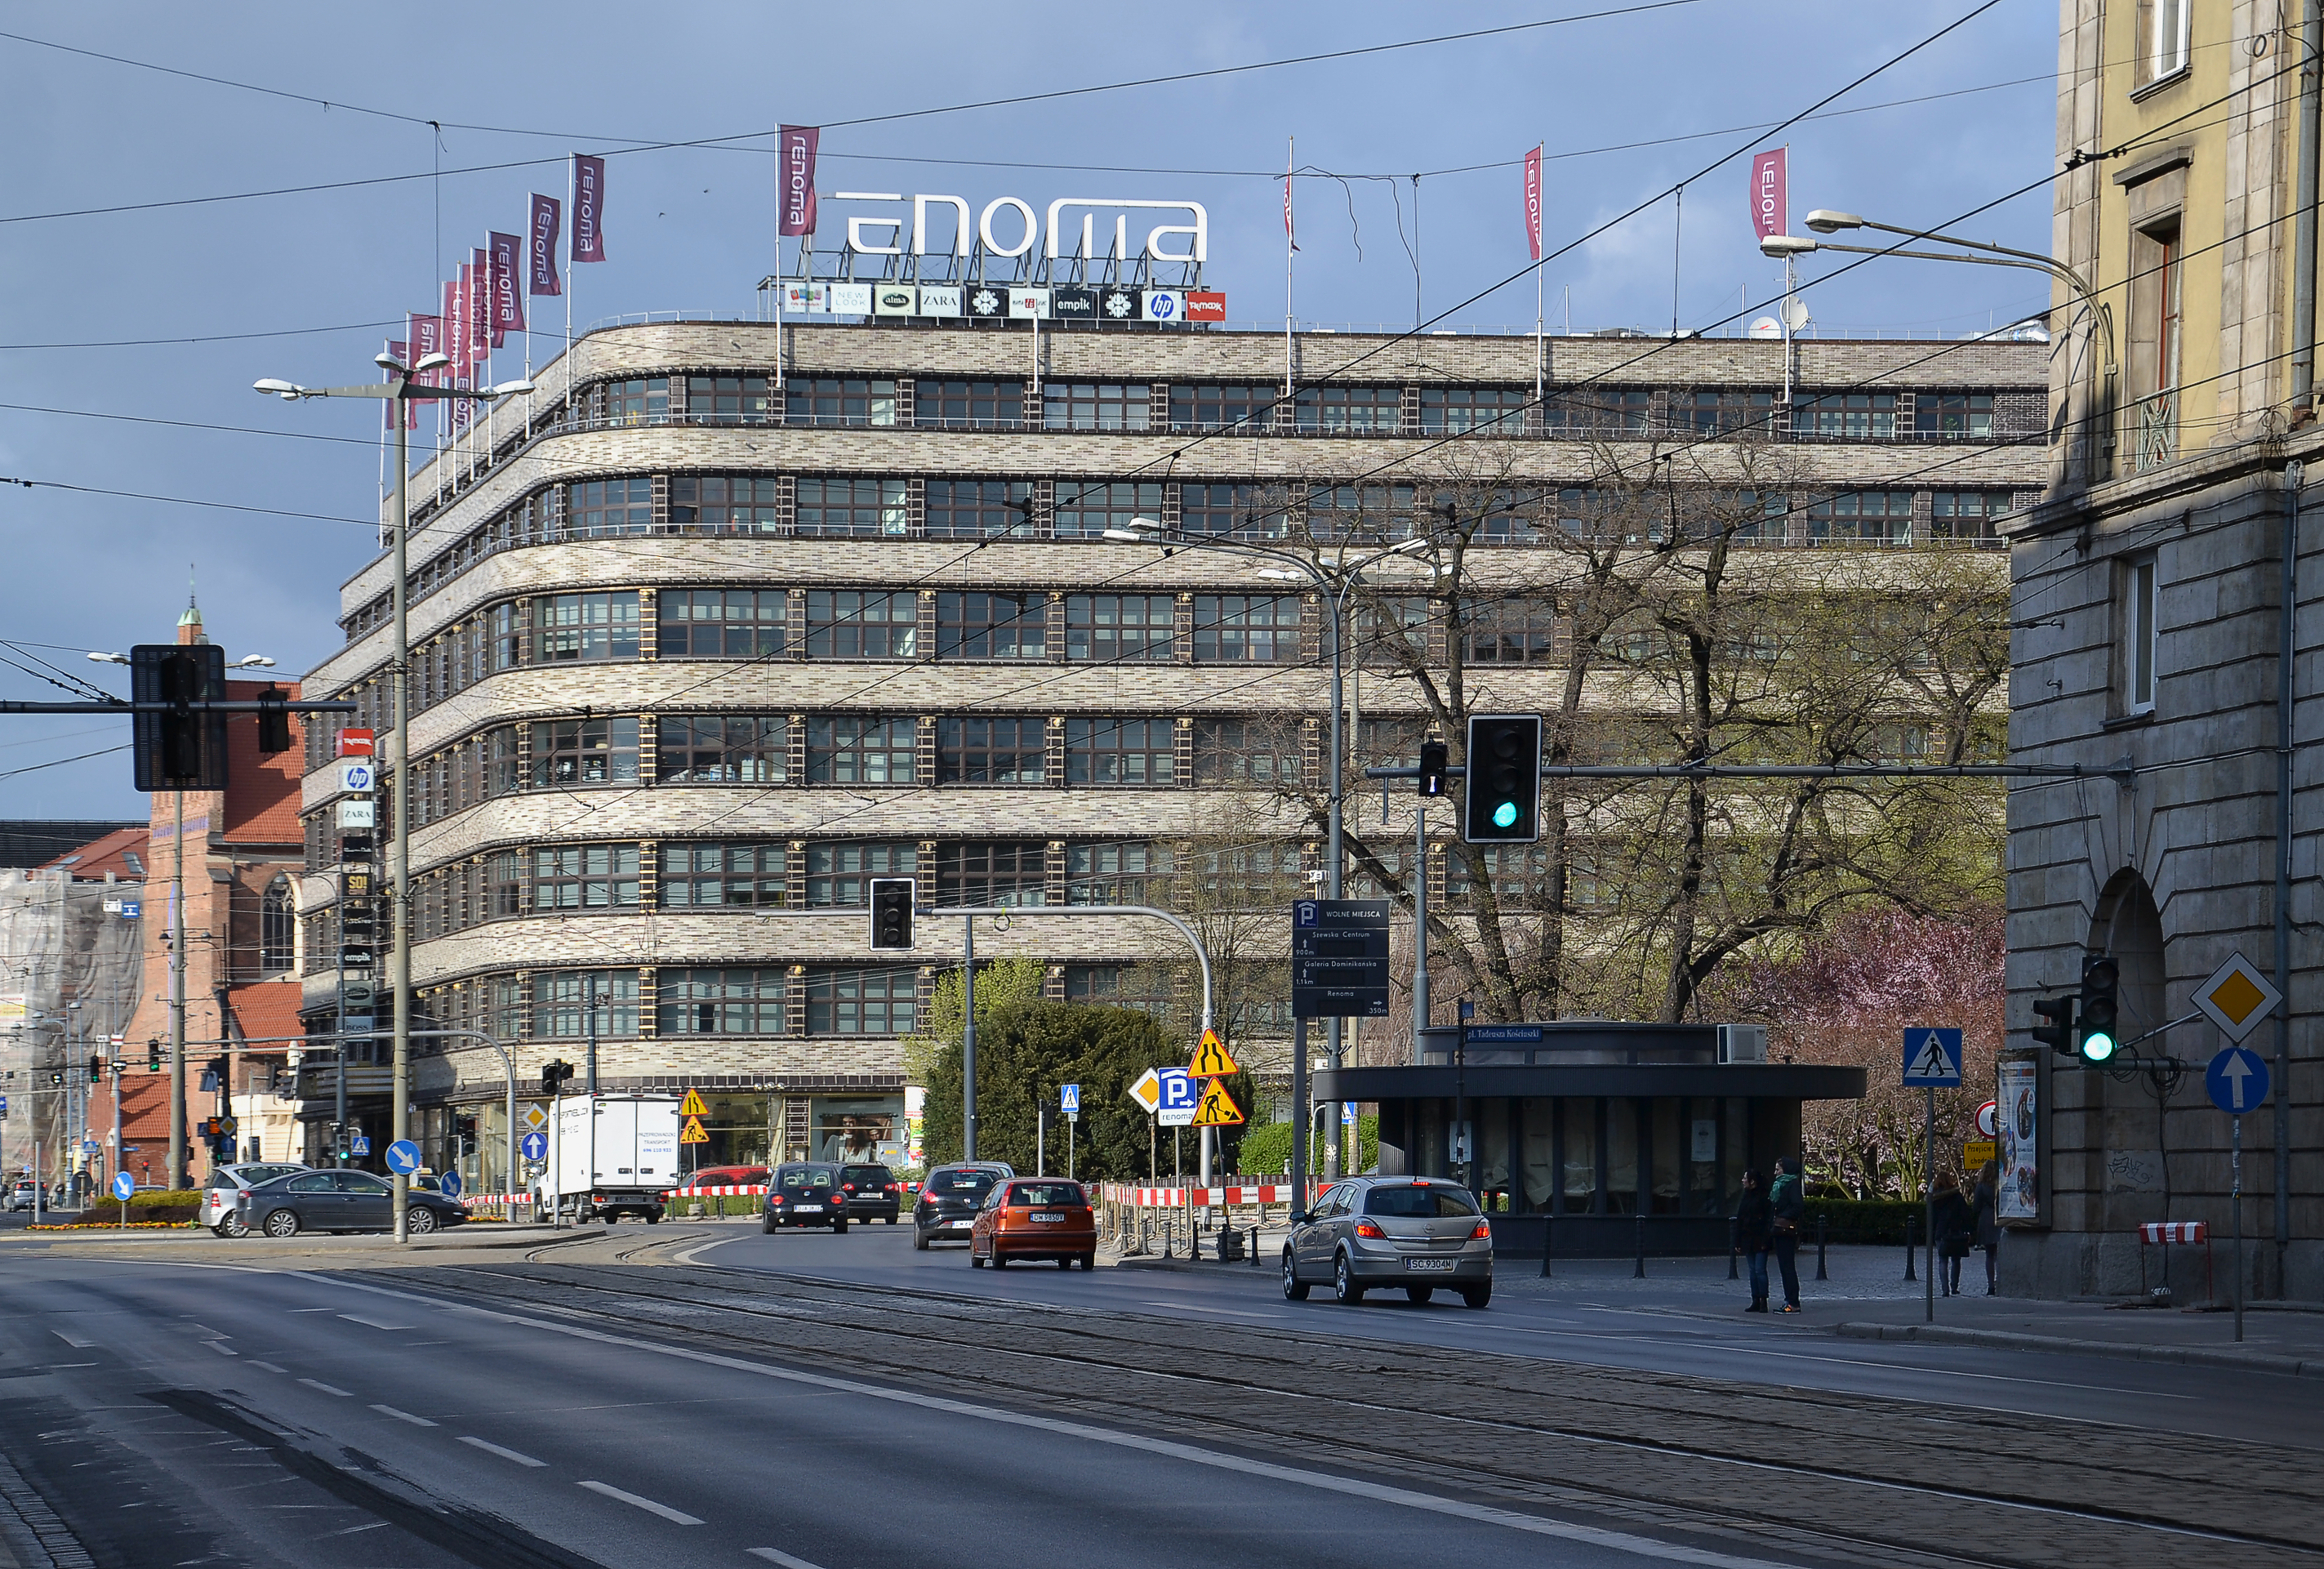 Wertheim (now Renoma) department store in Wrocław (Breslau)